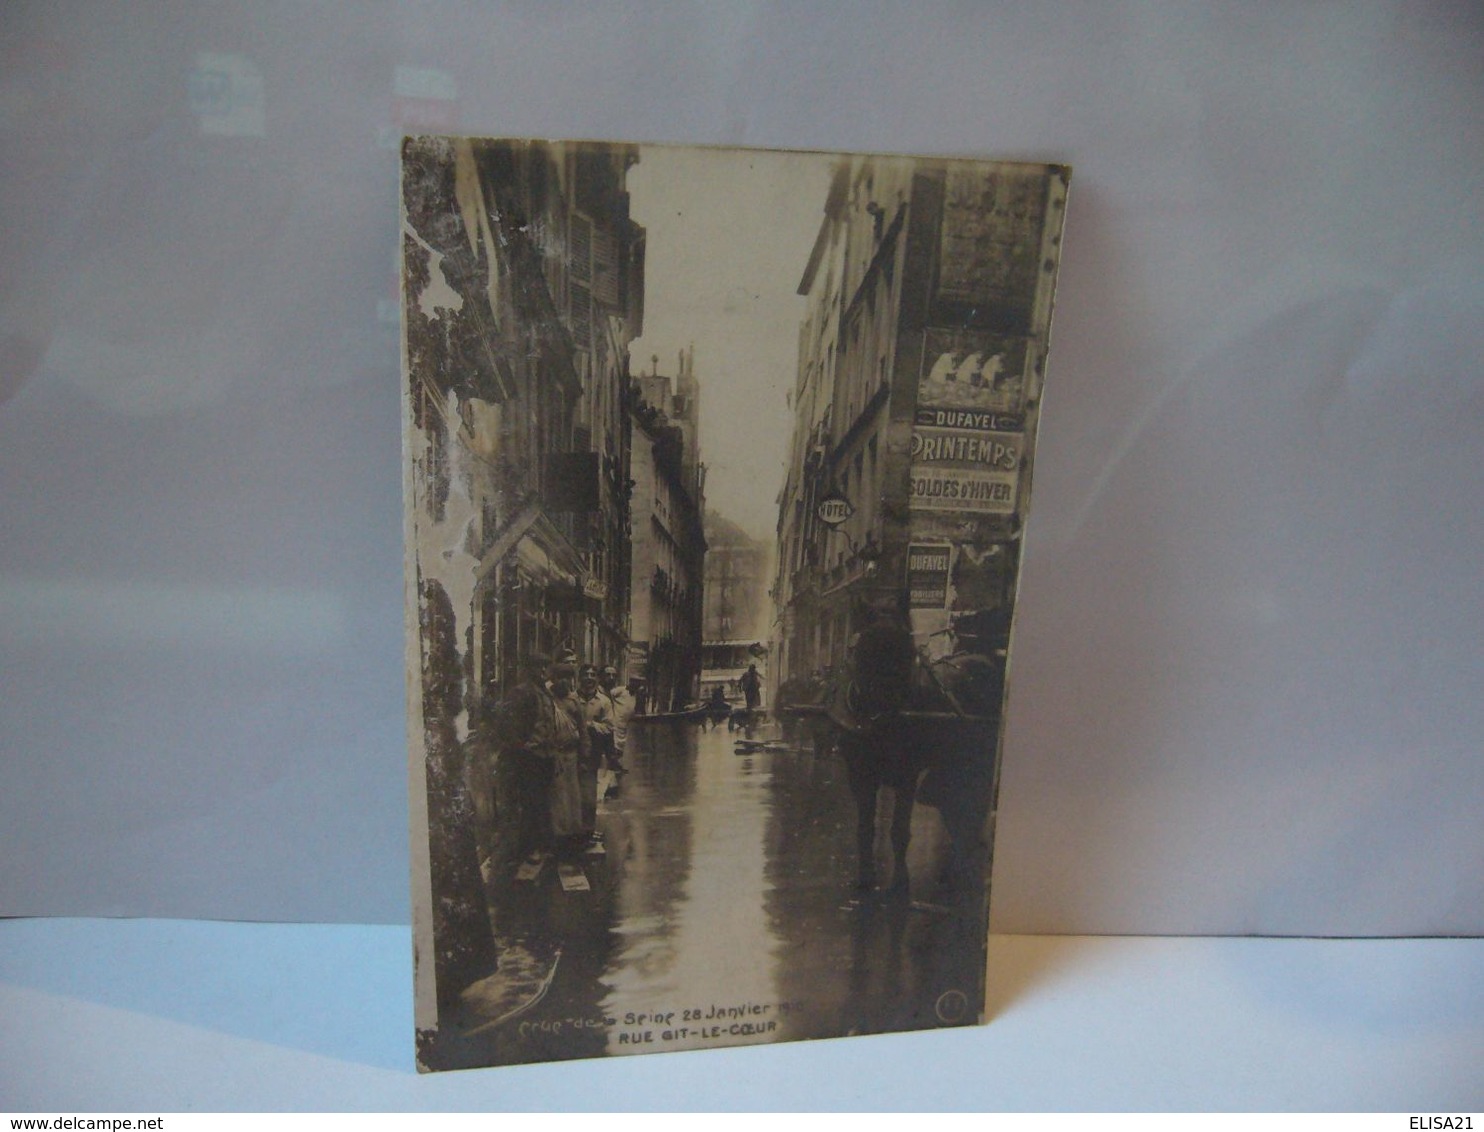 CRUE DE LA SEINE 28 JANVIER 1910 RUE GIT LE COEUR CPA - Paris Flood, 1910